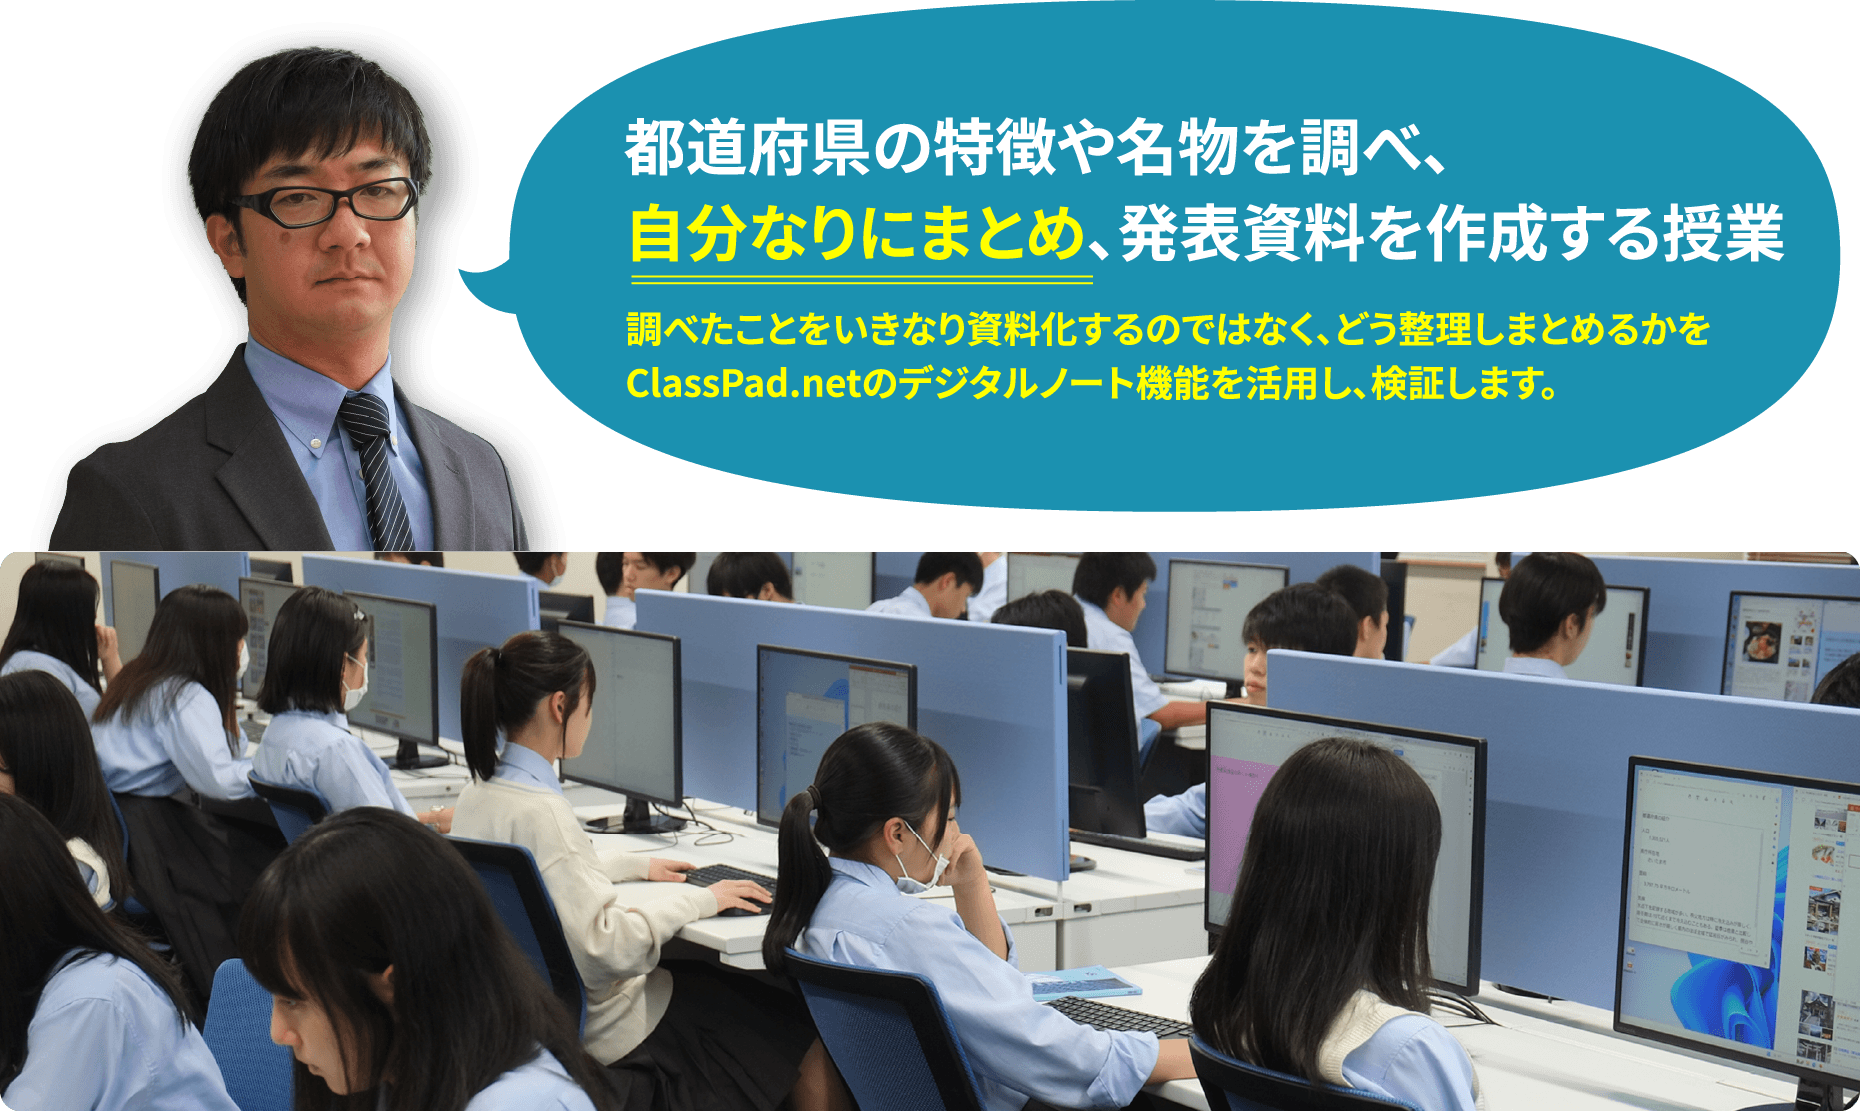 都道府県の特徴や名物を調べ、 自分なりにまとめ、発表資料を作成する授業　調べたことをいきなり資料化するのではなく、どう整理しまとめるかを ClassPad.netのデジタルノート機能を活用し、検証します。